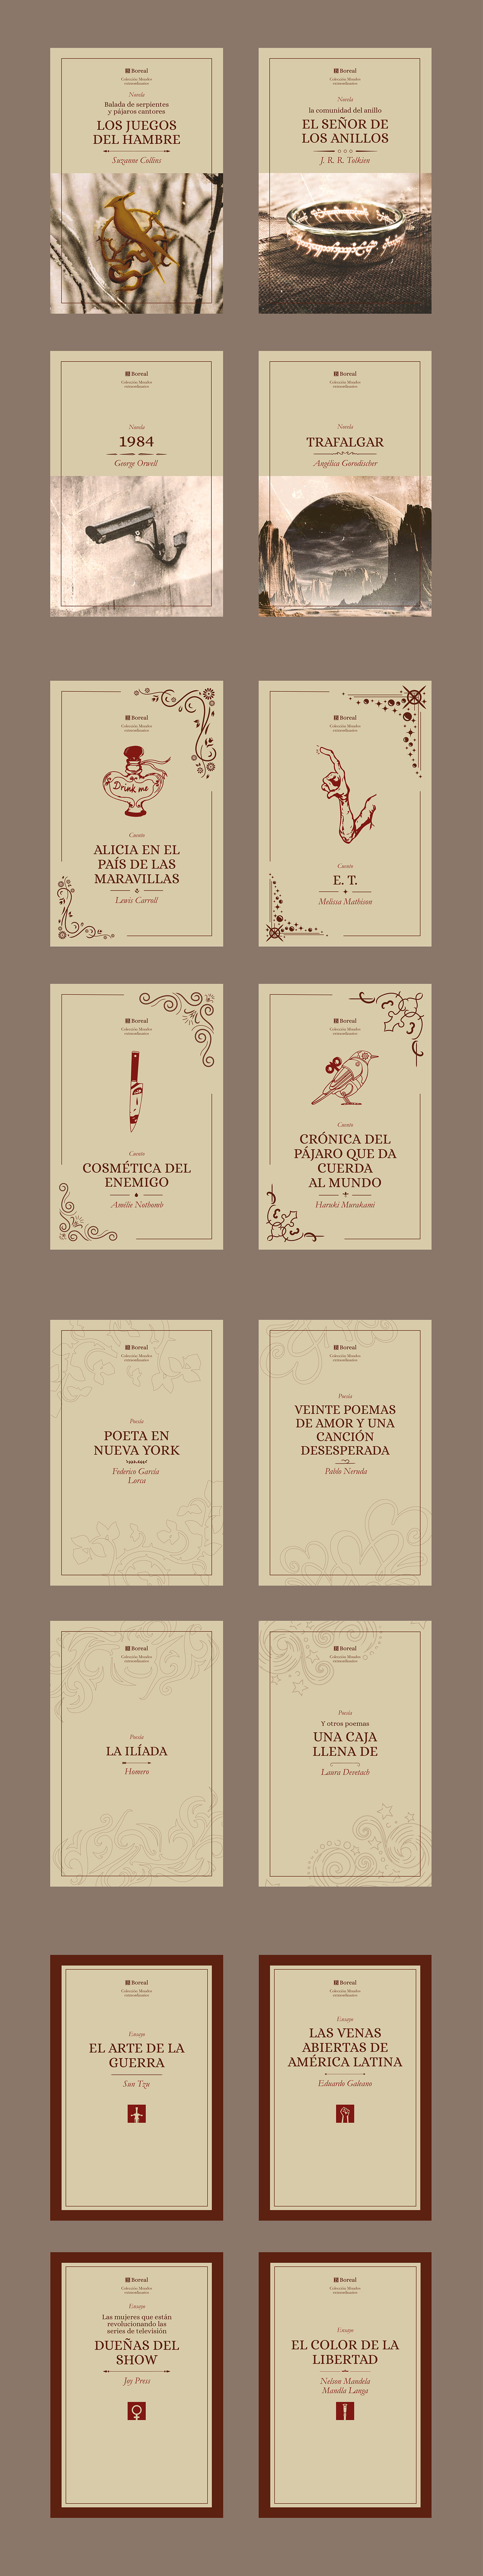 coleccion de libros colección book editorial print Graphic Designer adobe illustrator branding  design visual identity